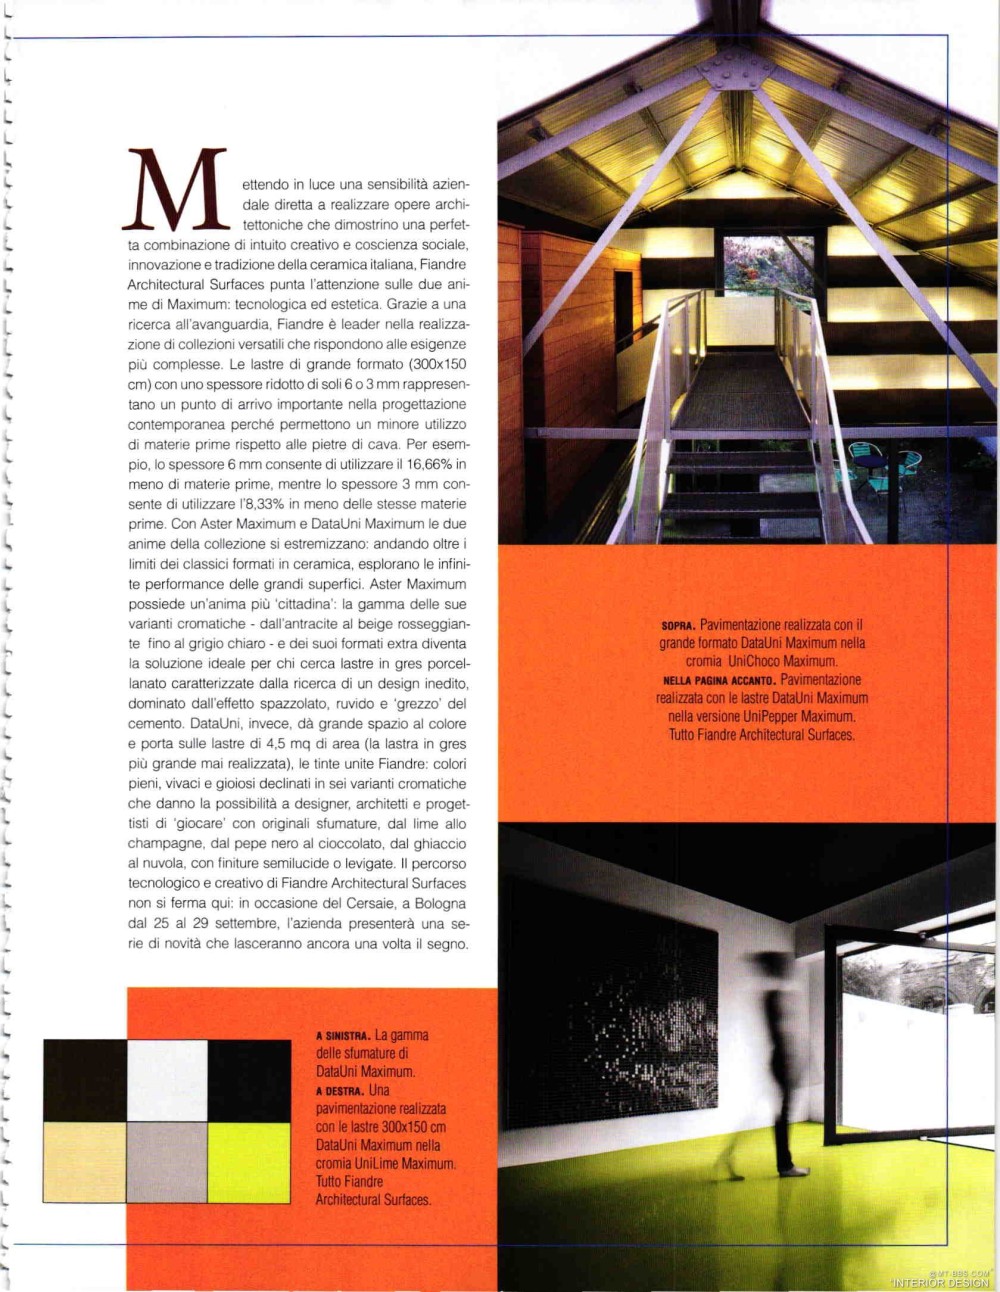 意大利AD 杂志 2012年全年JPG高清版本 全免（上传完毕）_0115.jpg